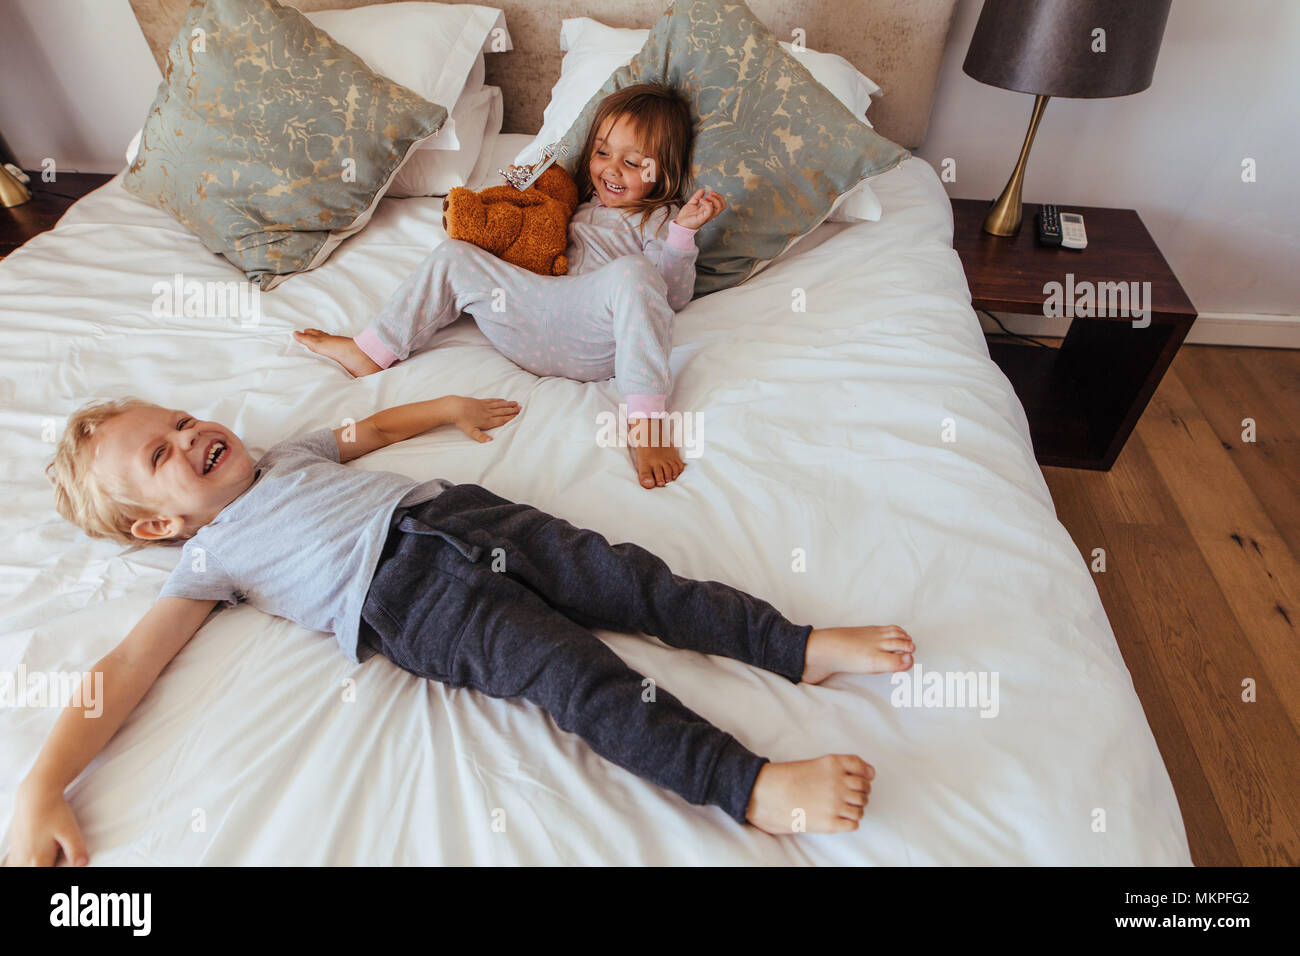 Kleiner Junge liegend auf Bett mit ihrer Schwester sitzt, indem Sie einen  Teddybären lächelnd. Fröhliche kleine Kinder spielen im Schlafzimmer  Stockfotografie - Alamy